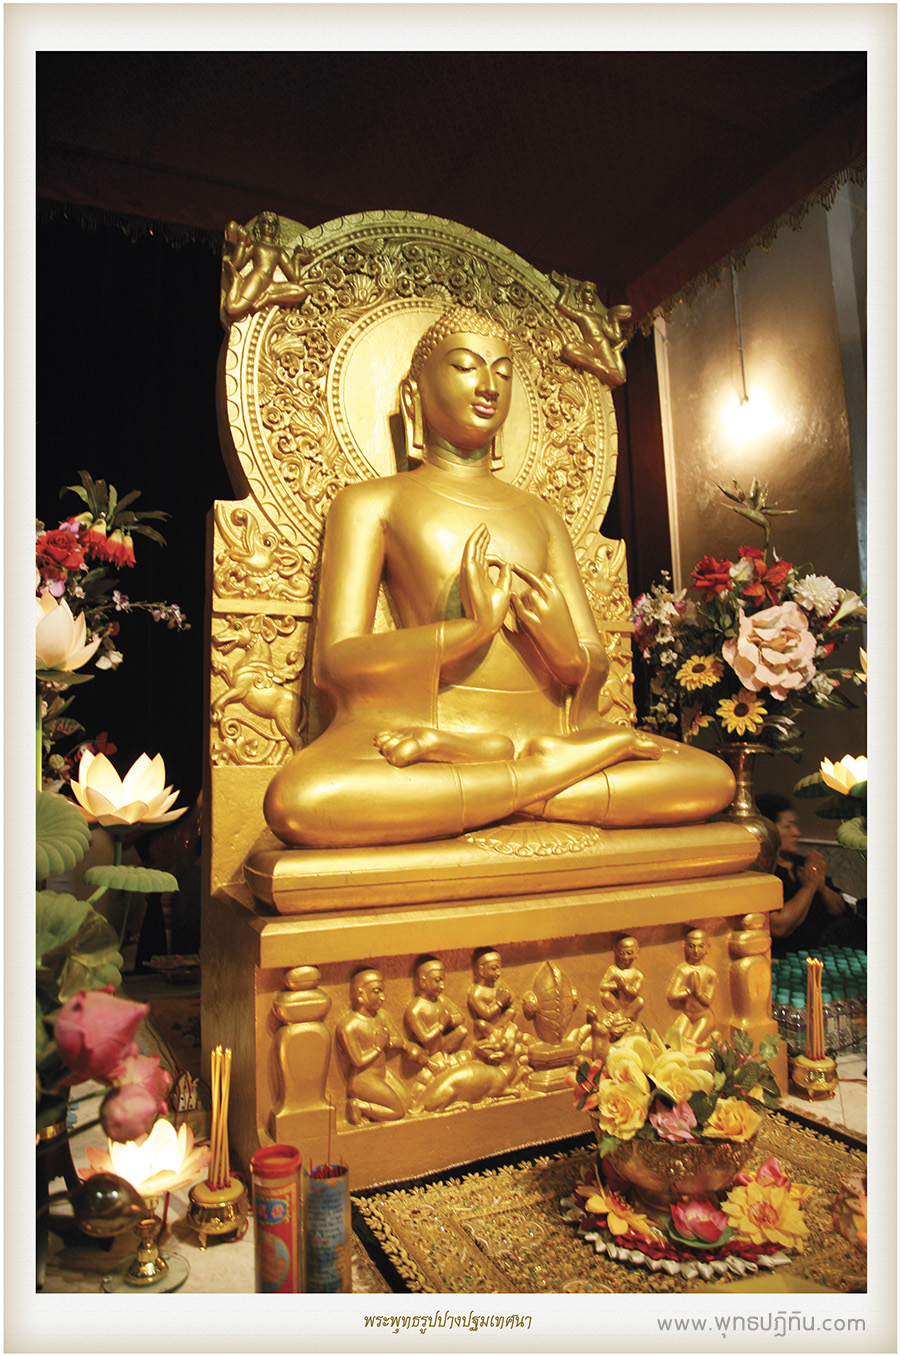 พระพุทธรูปปางปฐมเทศนา (sarnath buddha)